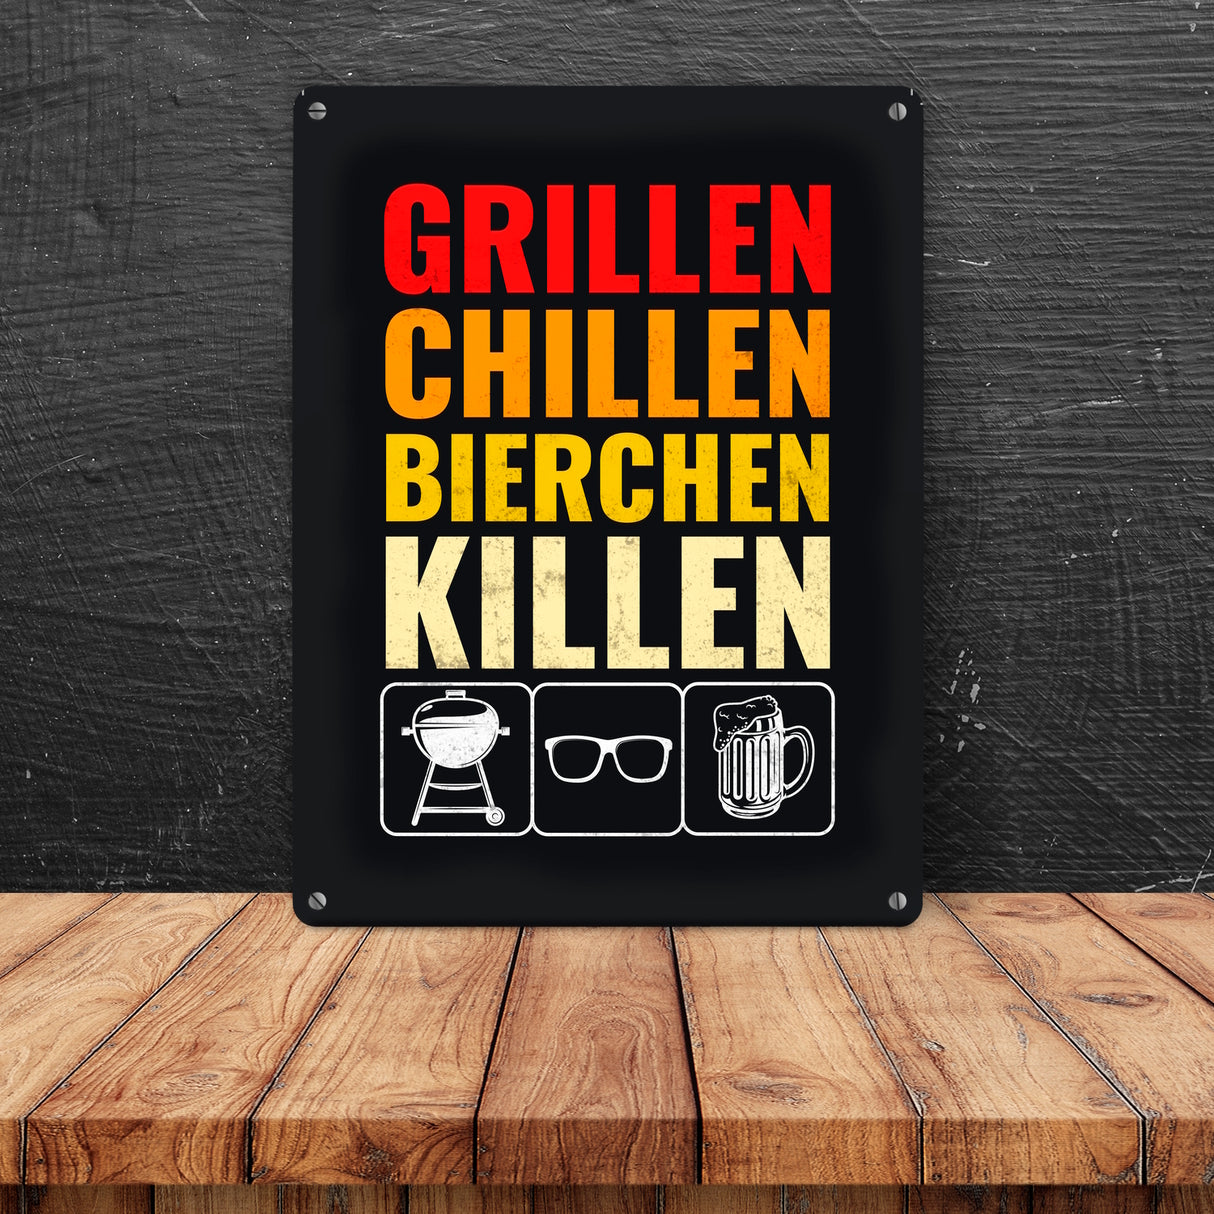 Grillen, Chillen, Bierchen Killen Metallschild mit Grill-, Sonnenbrille- und Biermotiv